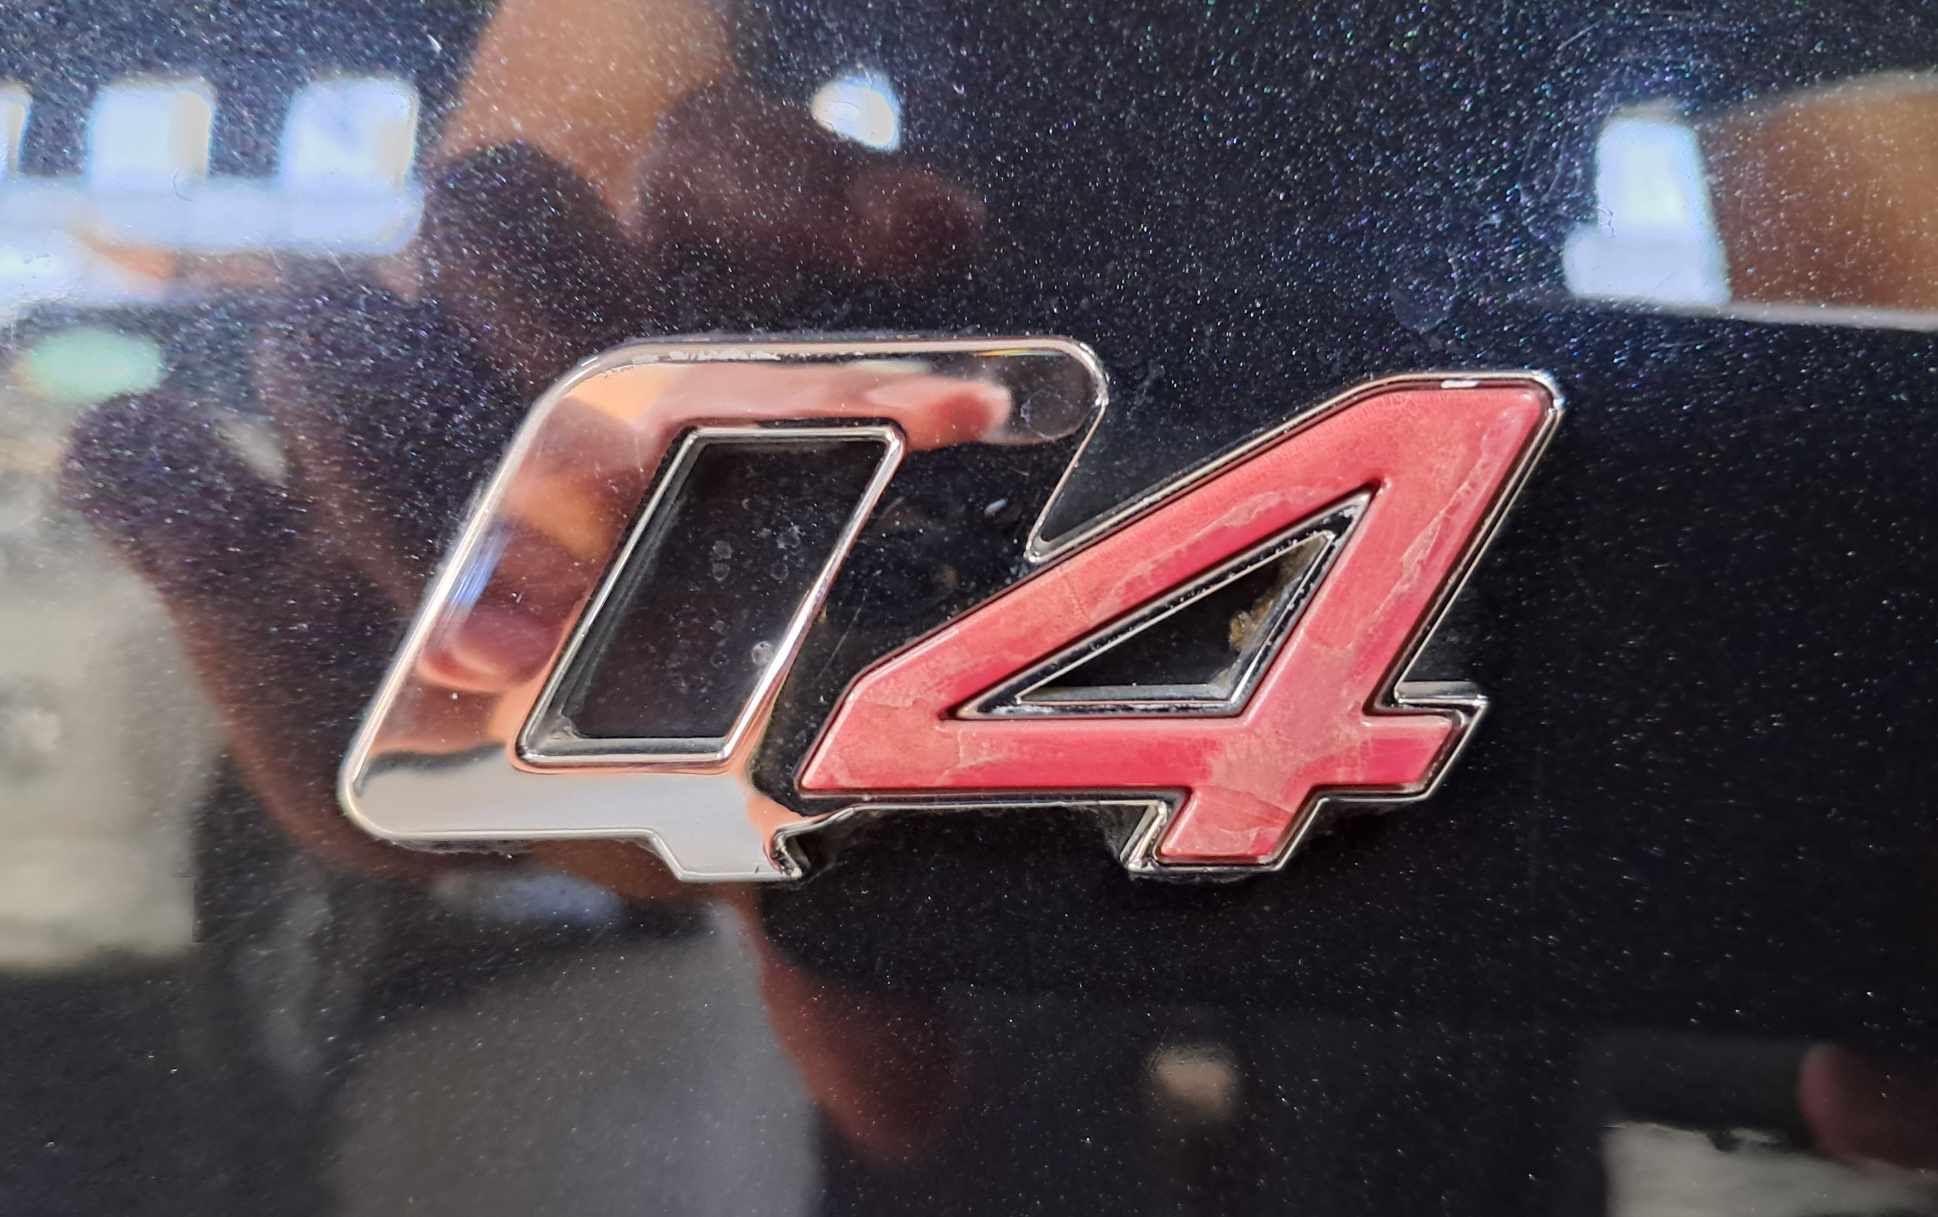 Maserati Quattroporte 2014